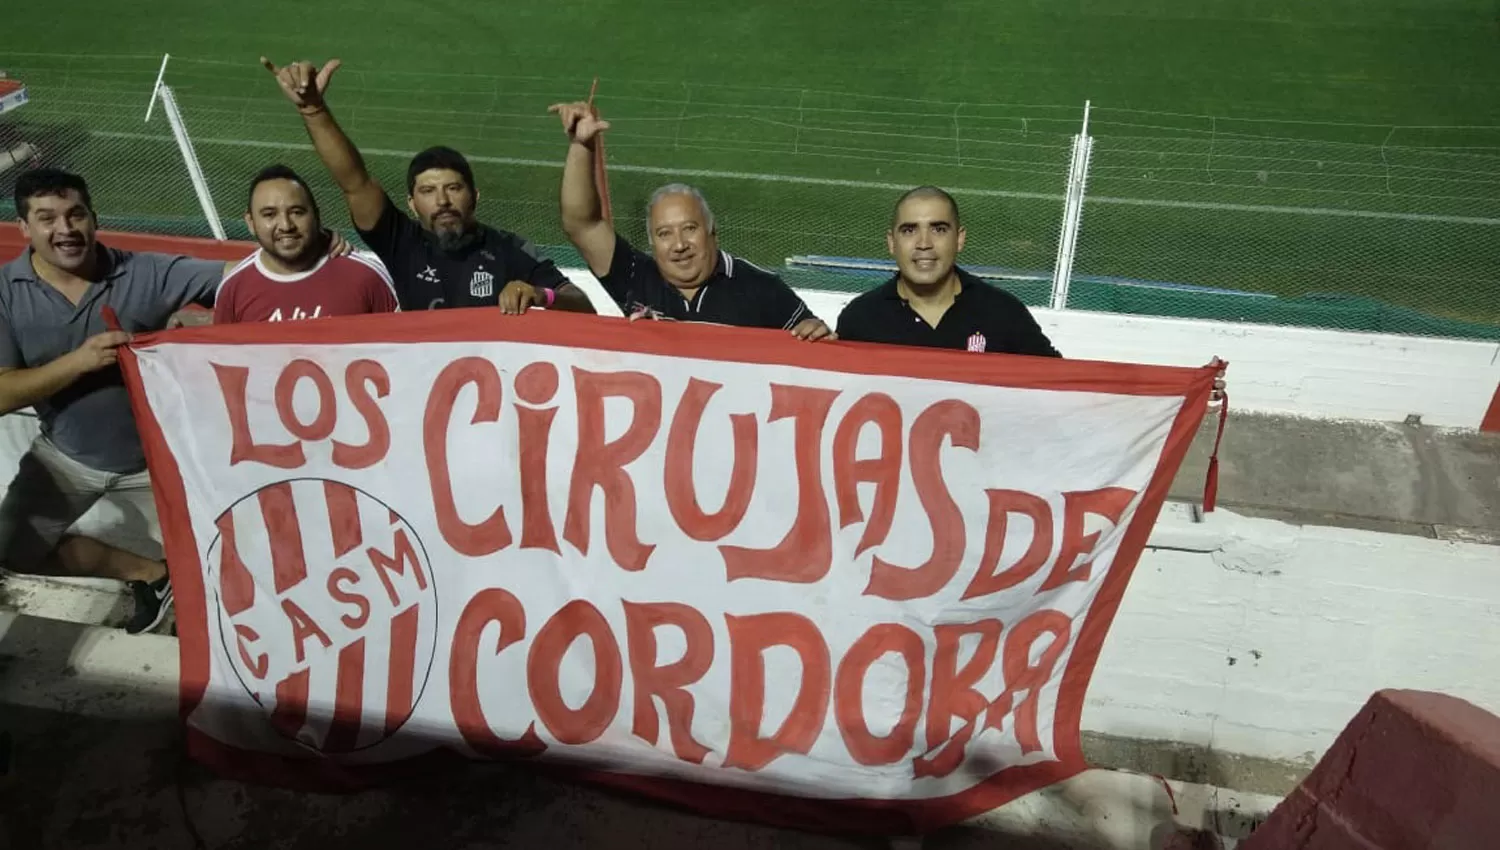 DIJERON PRESENTE. La filial de Córdoba pudo asistir al estadio de Instituto y apoyar al club en su debut. Alentaron todo el partido y llevaron hasta banderas.